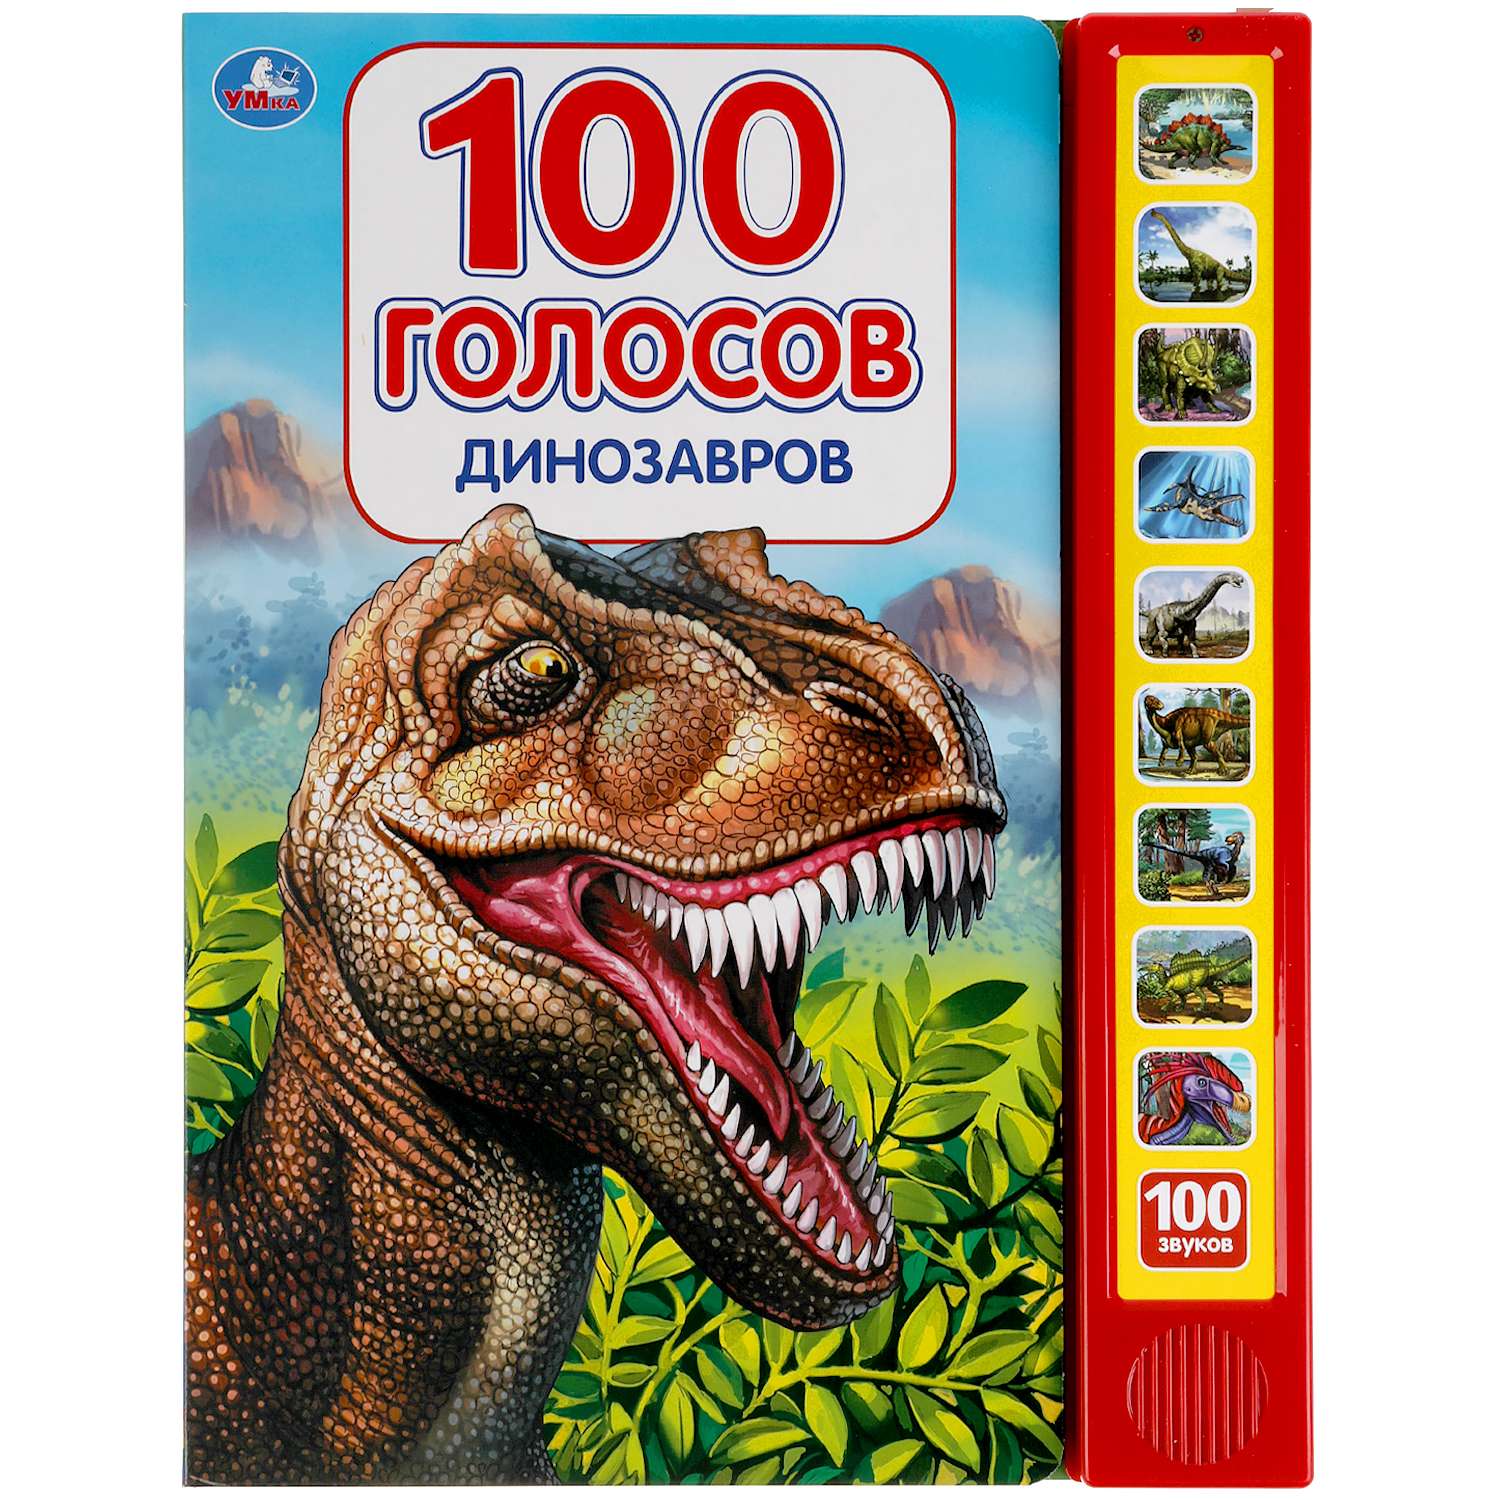 Книга УМка Динозавры 100 голосов 318137 - фото 1